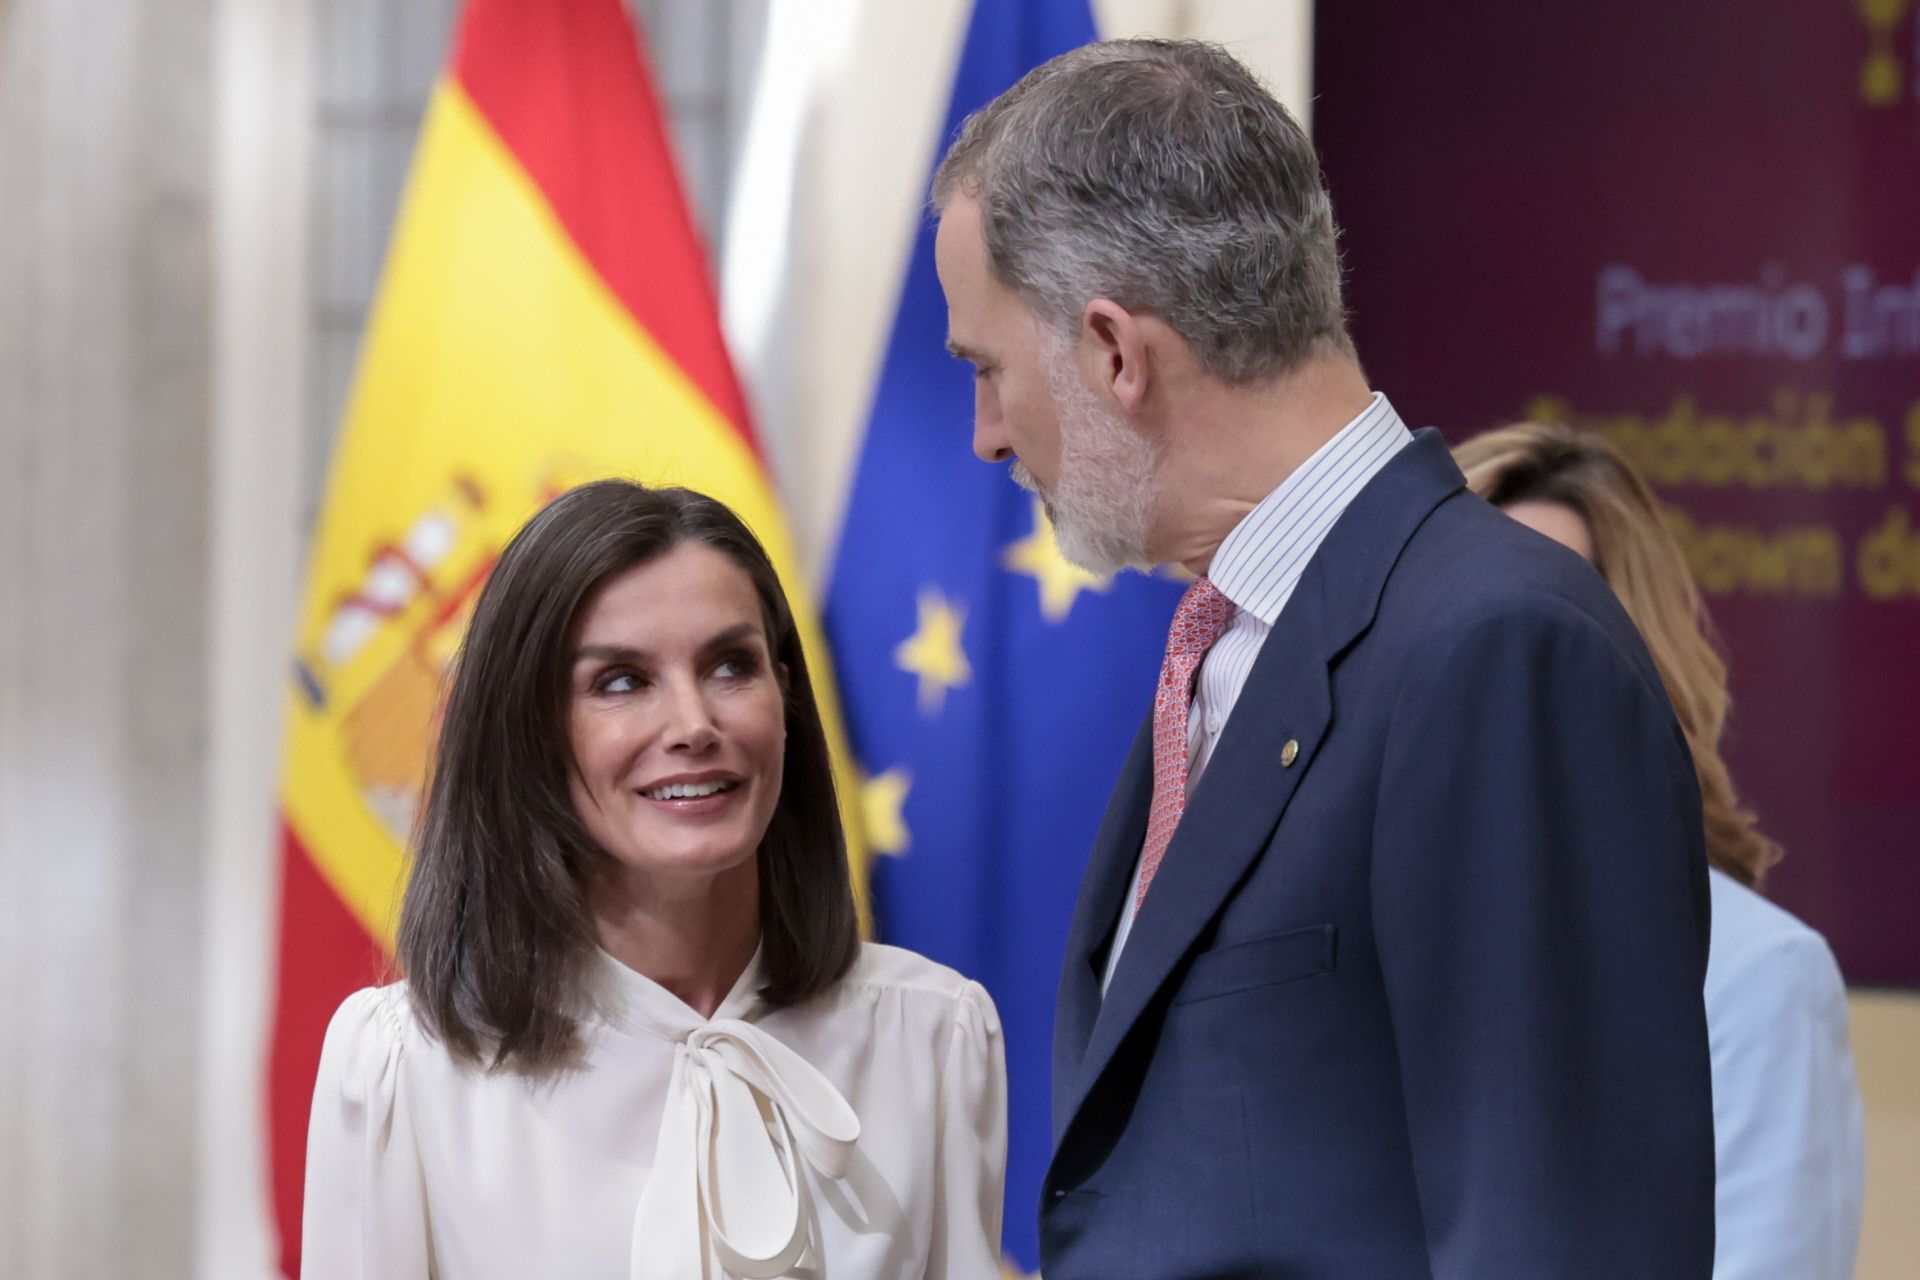 Los reyes de España, don Felipe y doña Letizia, en una imagen reciente en Madrid